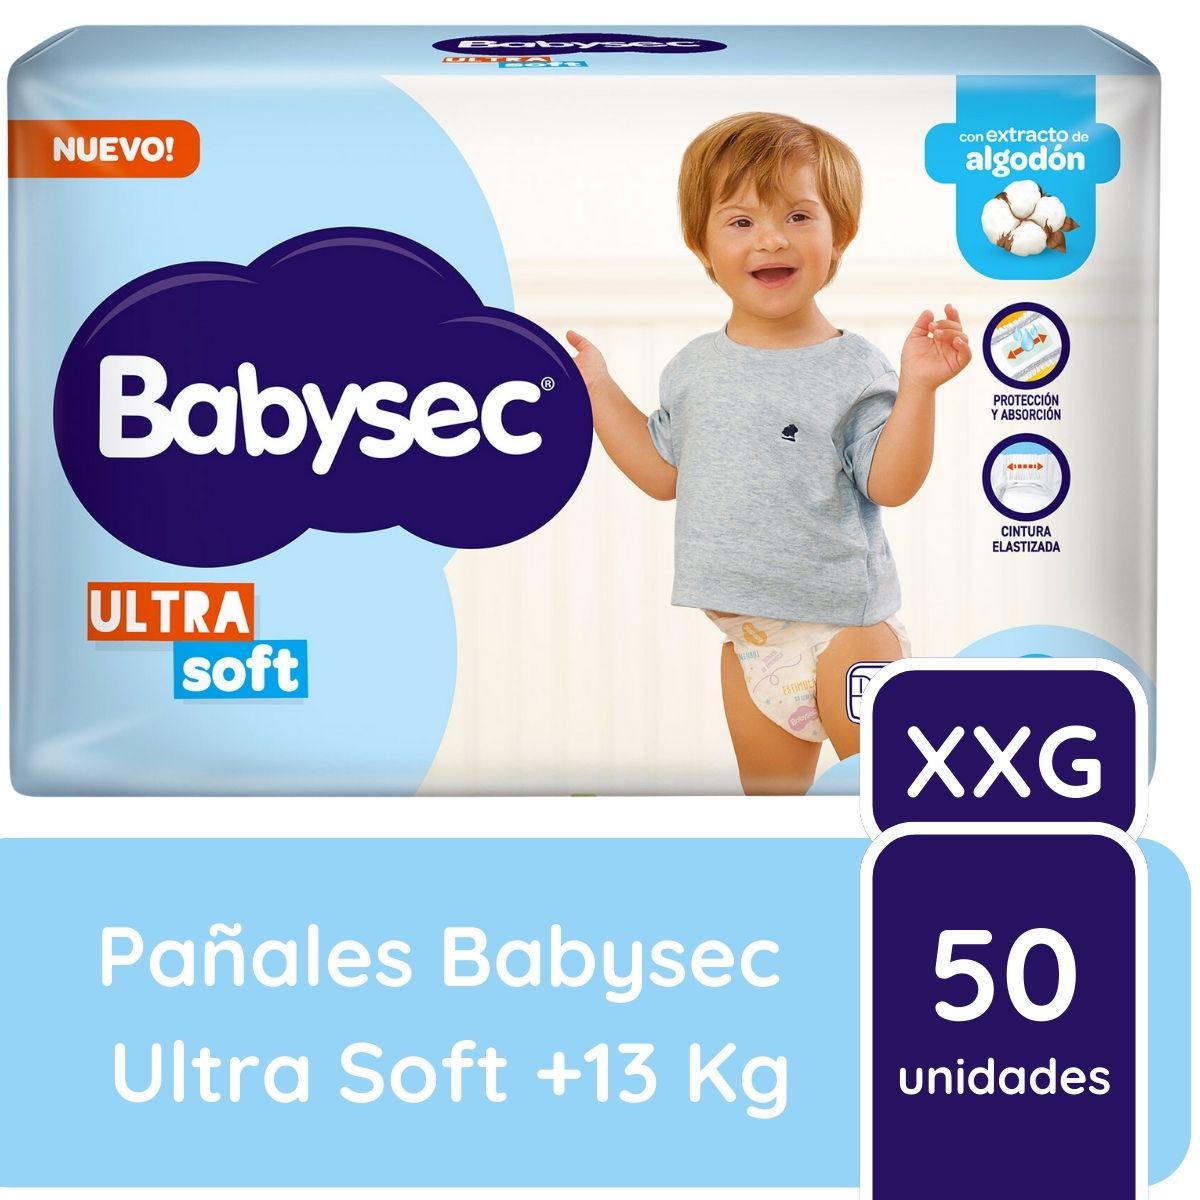 Pañales Babysec Ultra Soft Talle XXG x50 unidades +13 kilos